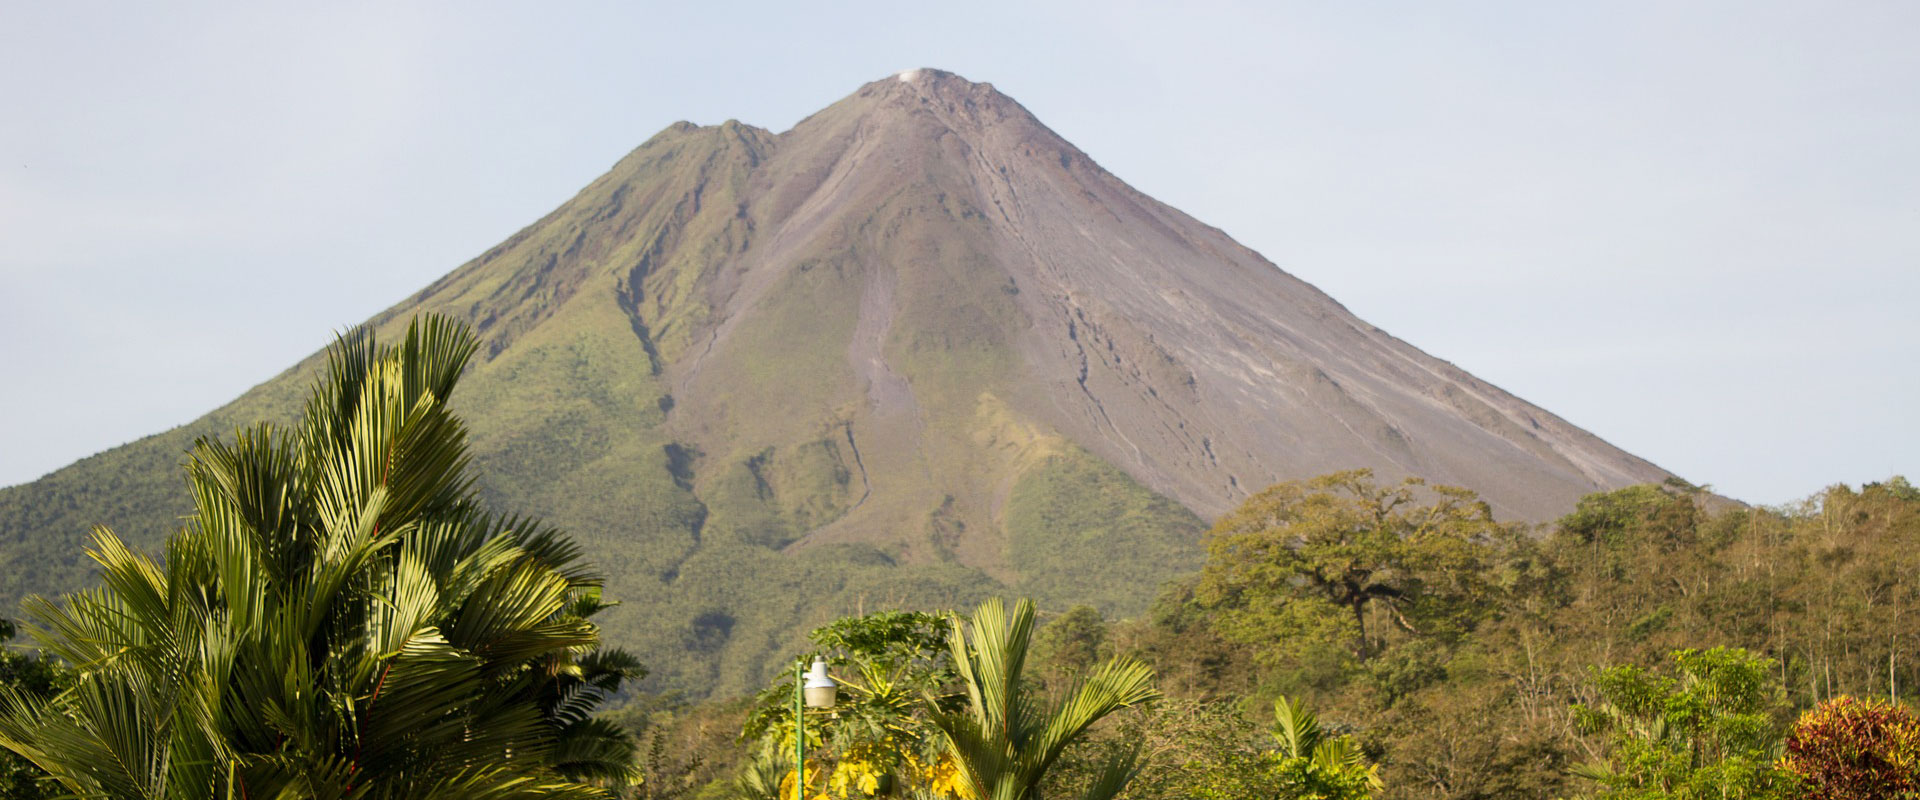 La Fortuna Volcano in Costa Rica